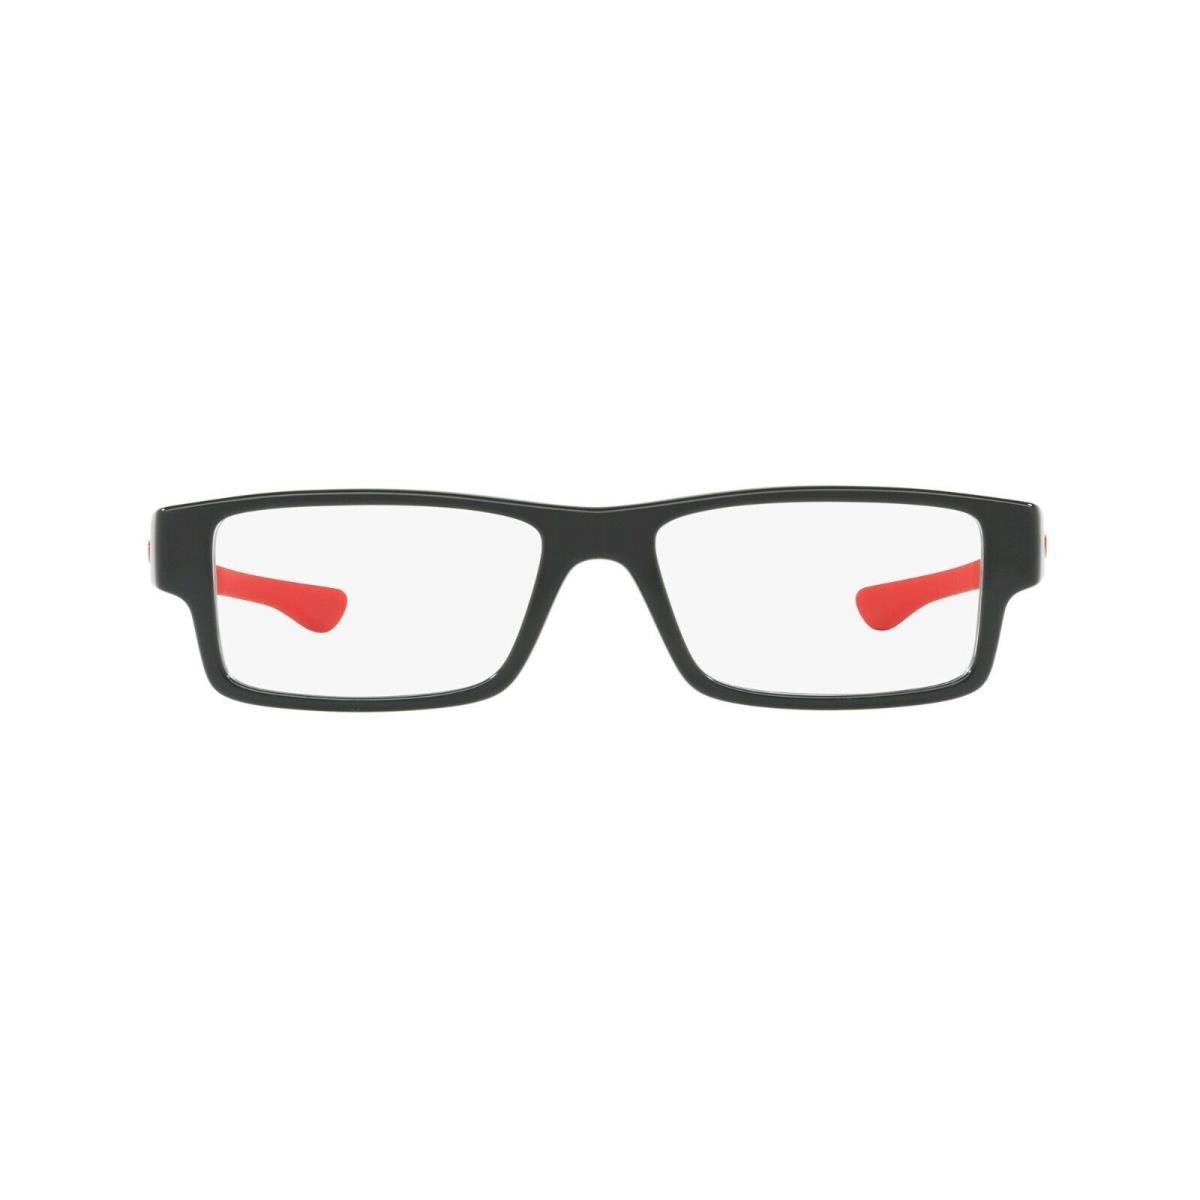 Oakley eyeglasses Airdrop - Polished Black Frame